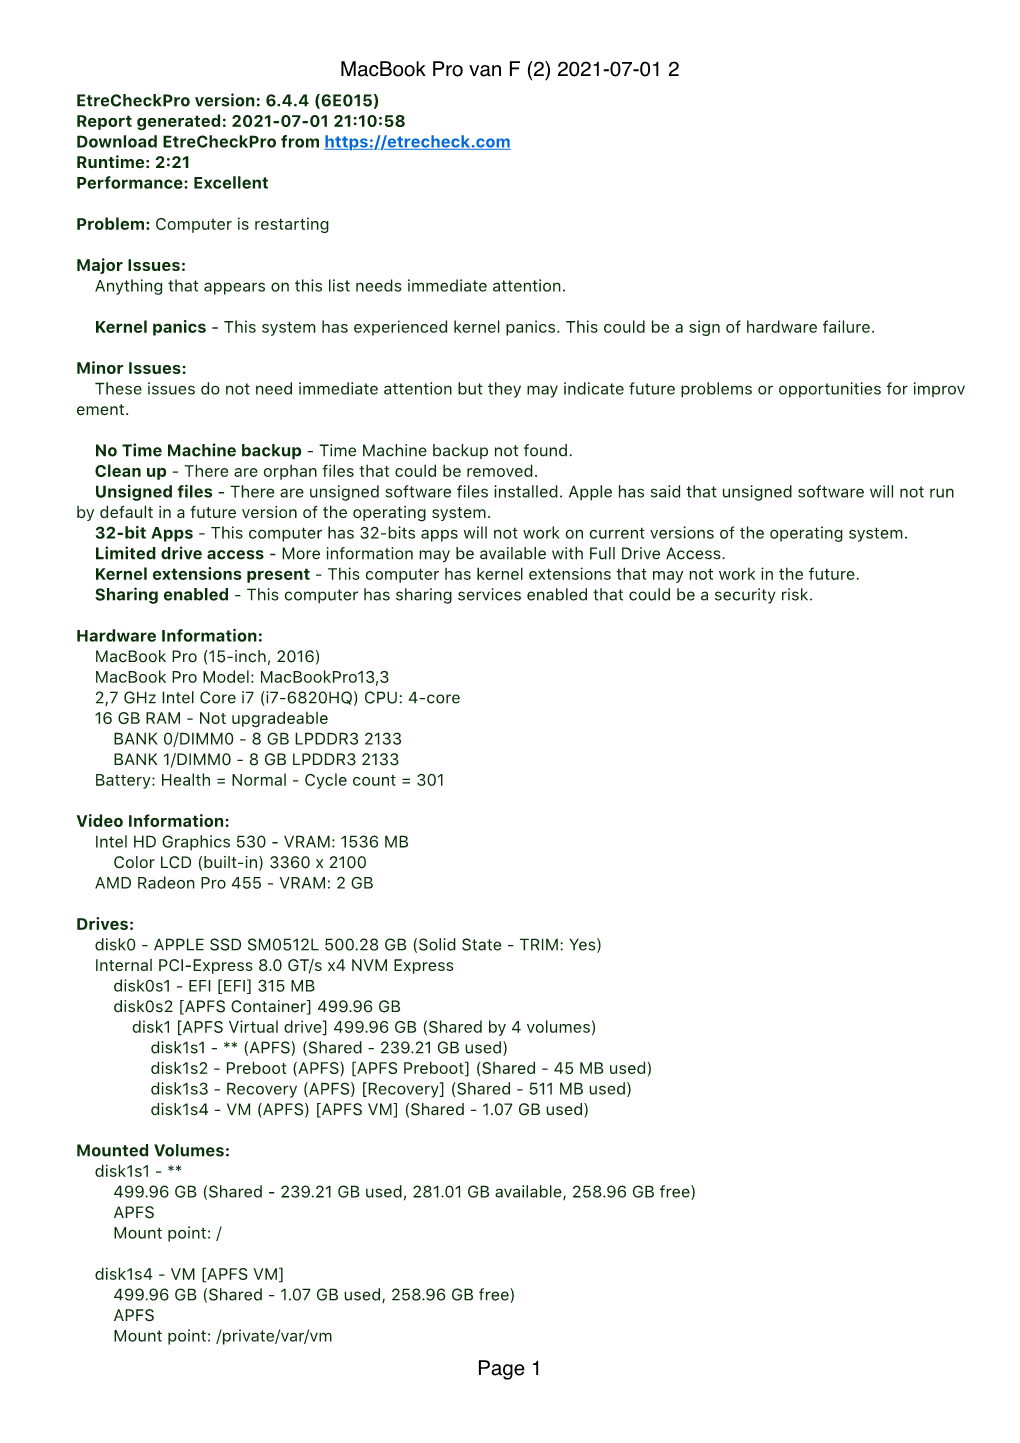 Macbook Pro Van F (2) 2021-07-01 2 Page 1